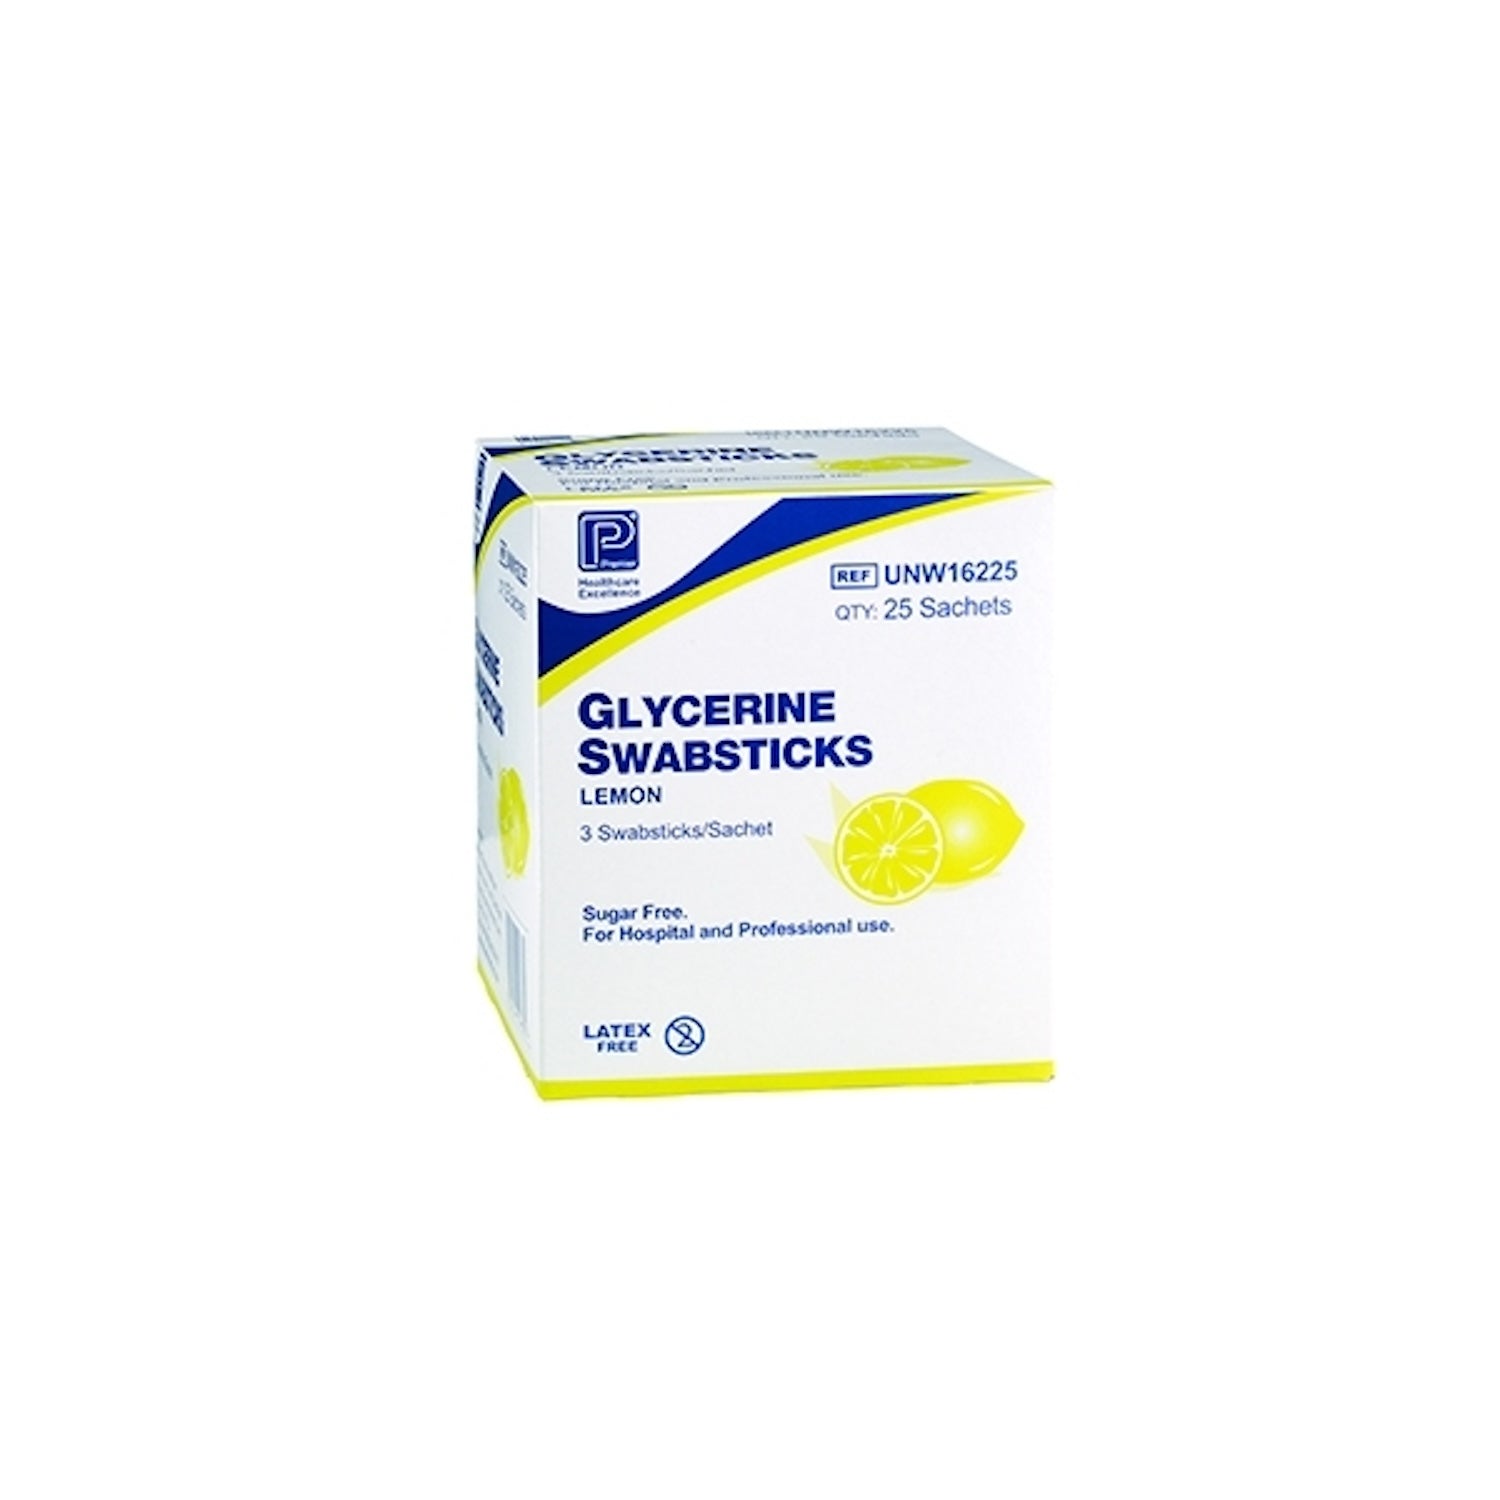 Glycerin Swabsticks | Lemon | Pack of 25 Sachets (1)